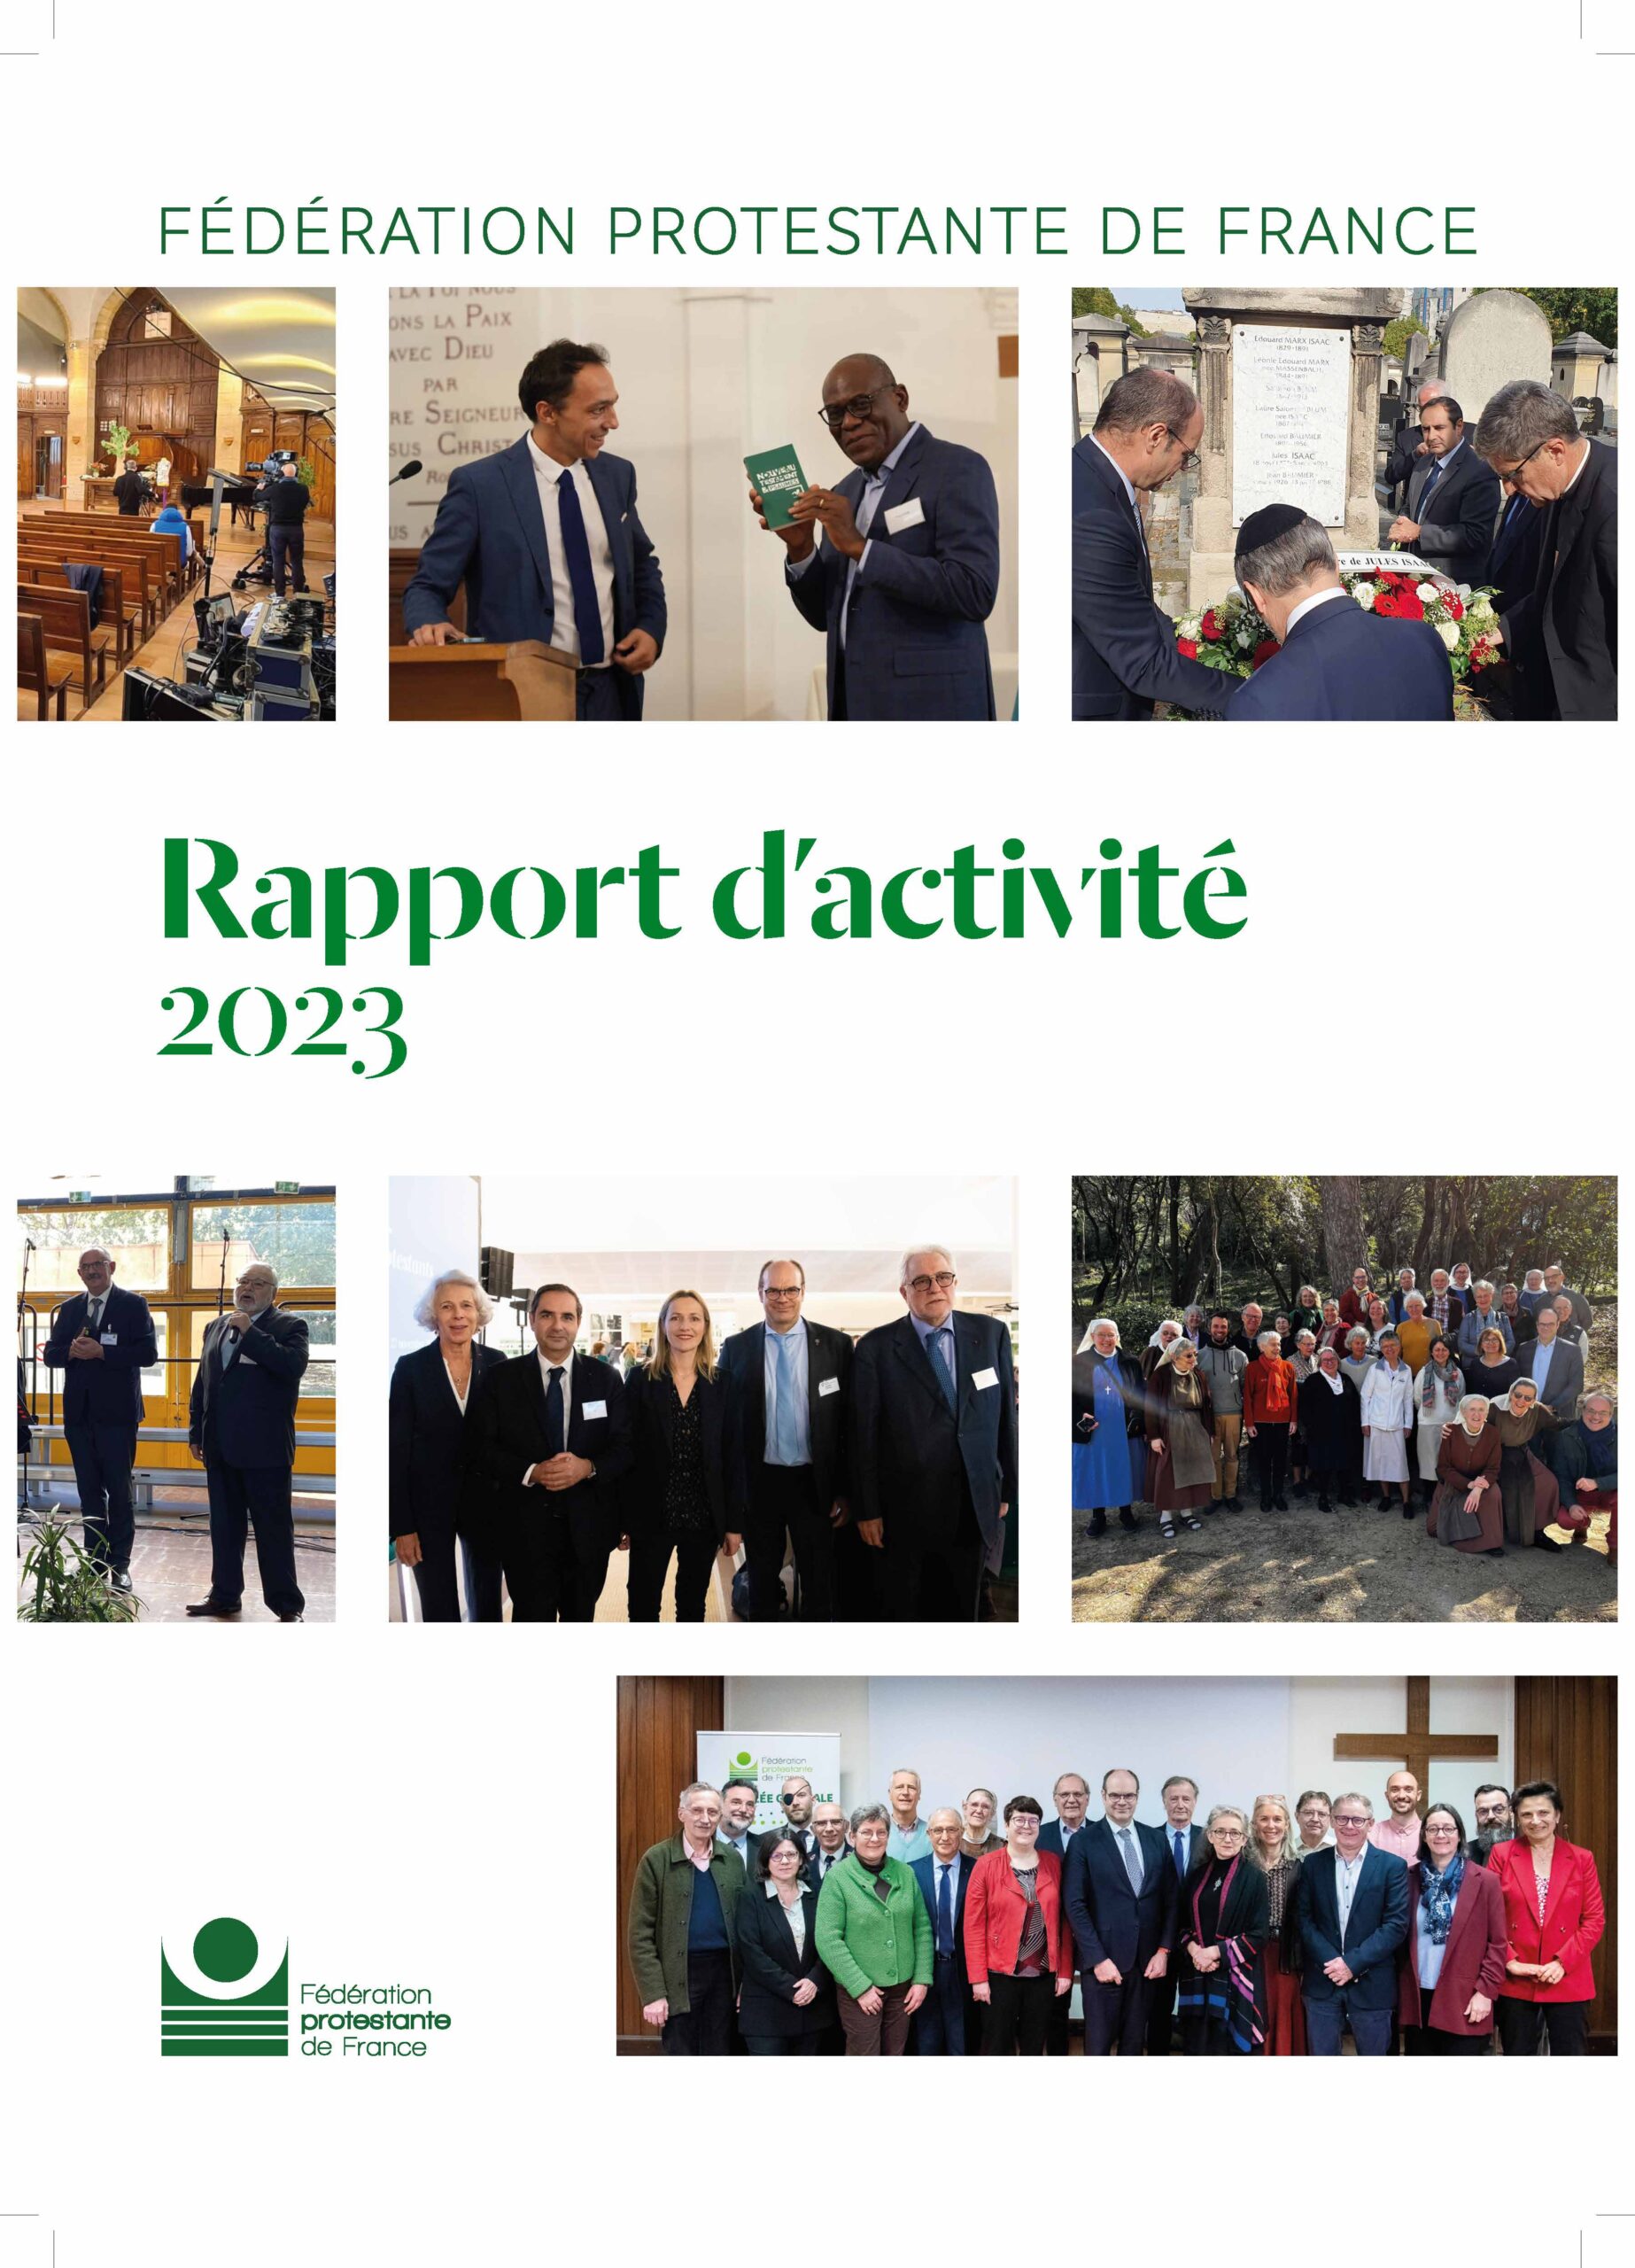 Rapport d'activité de la Fédération protestante de France 2023